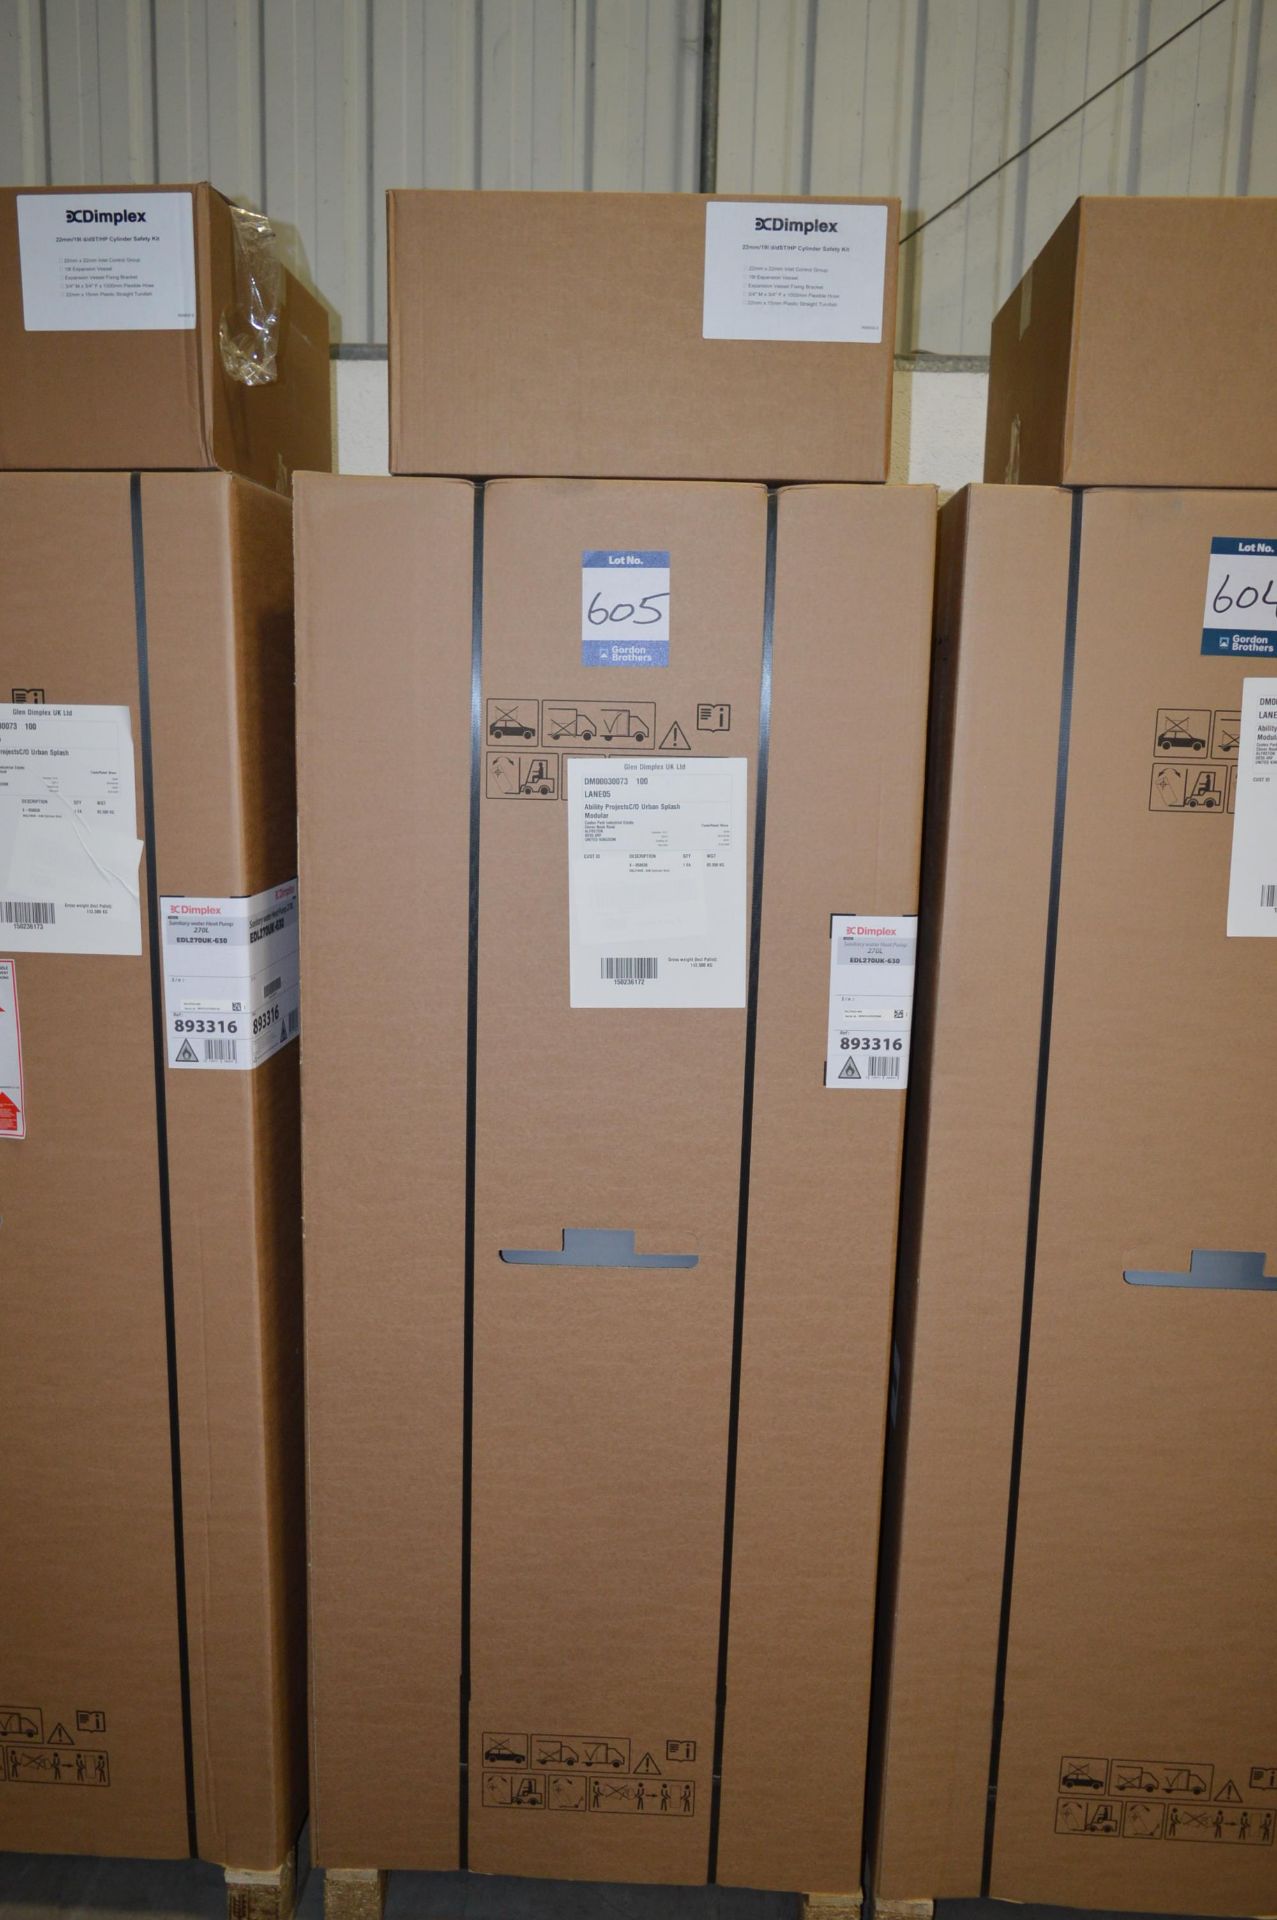 Dimplex, sanitary heat pump, Model EDL270UK-630, 270L, Serial No. 893316-220255349 (boxed)